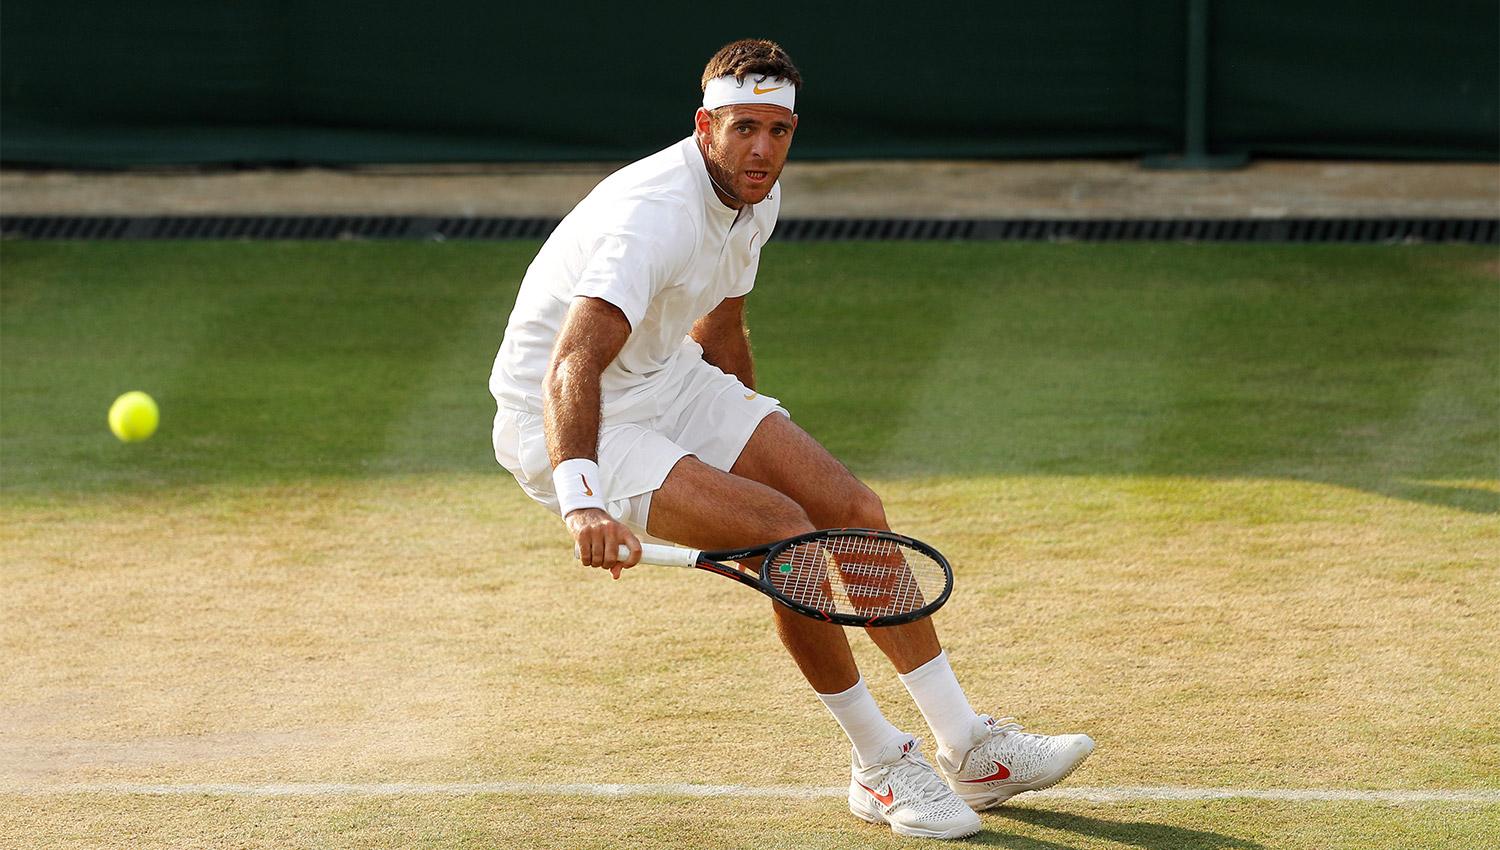 POR UN NUEVO TRIUNFO. Del Potro juega en Wimbledon. (REUTERS)